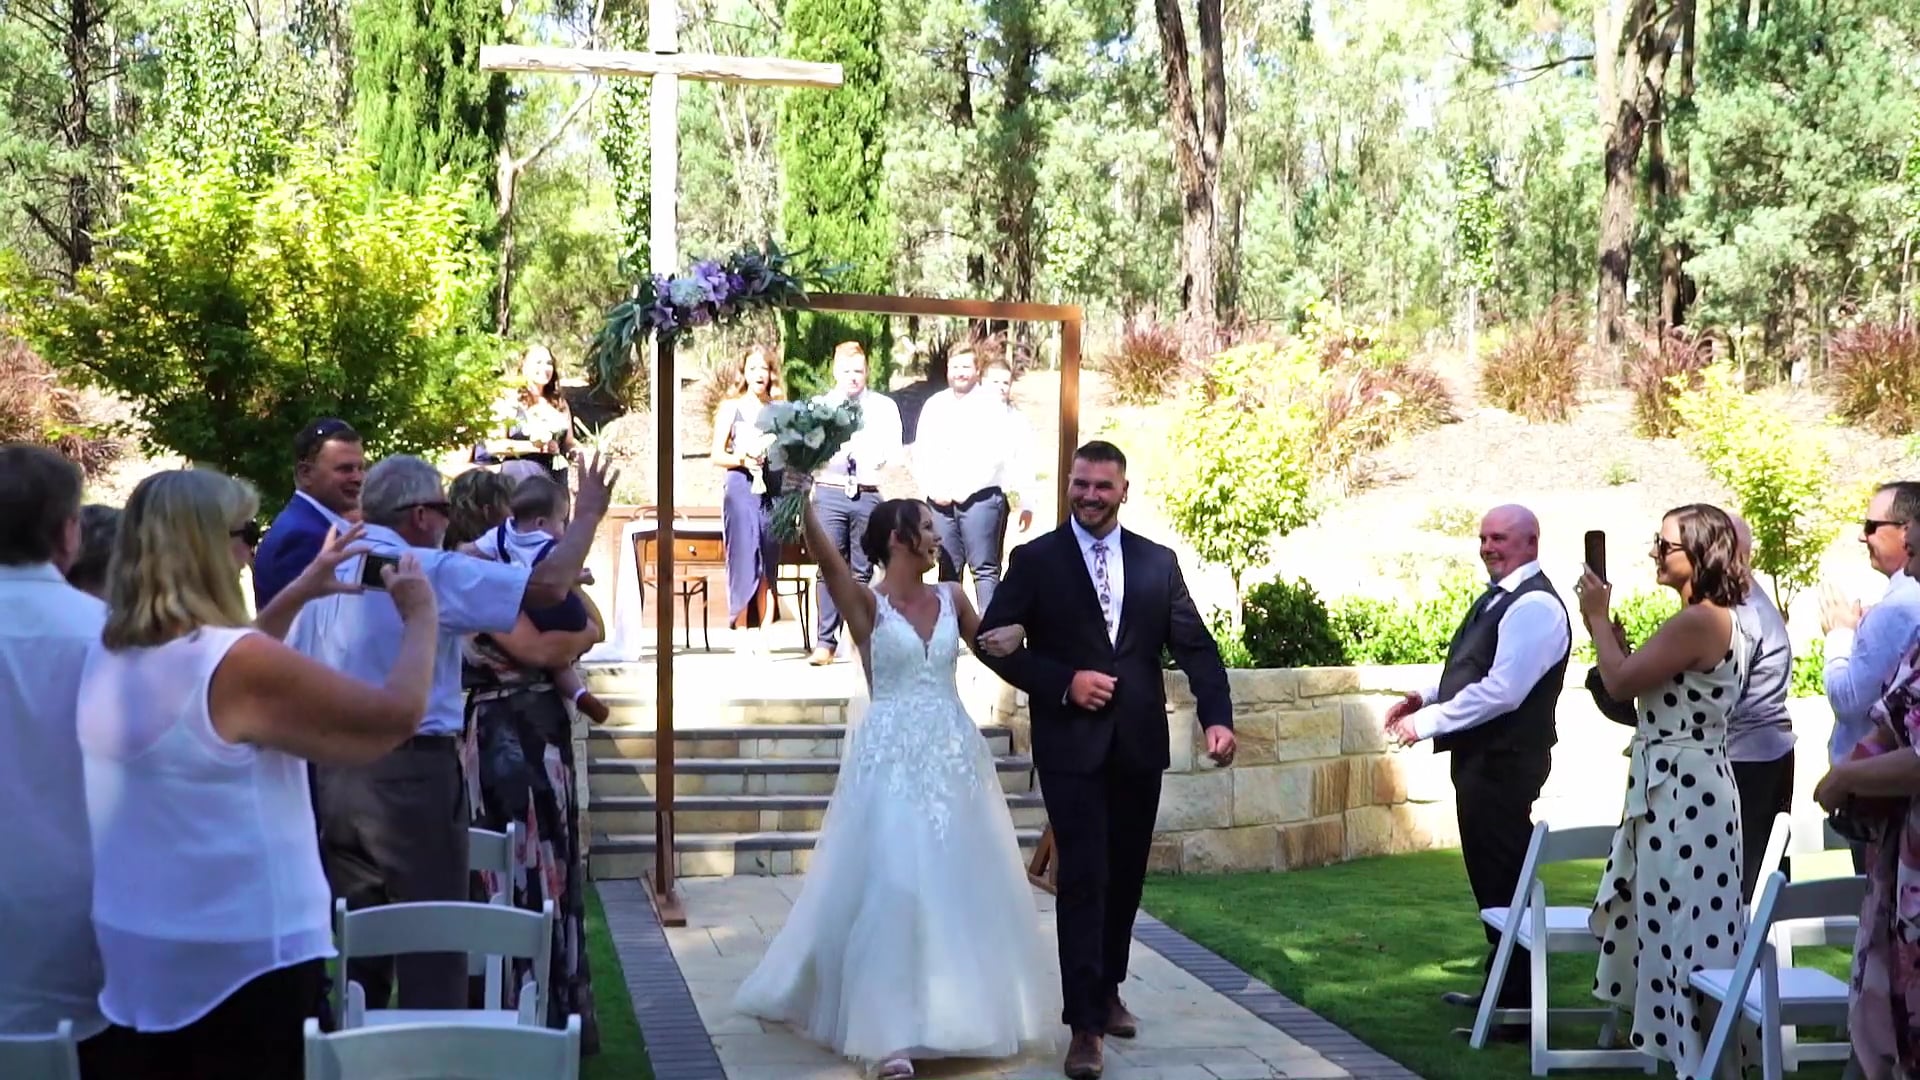 WGM Wedding Videographers | Wagga | Darcie & Daniel Wedding Highlight Video